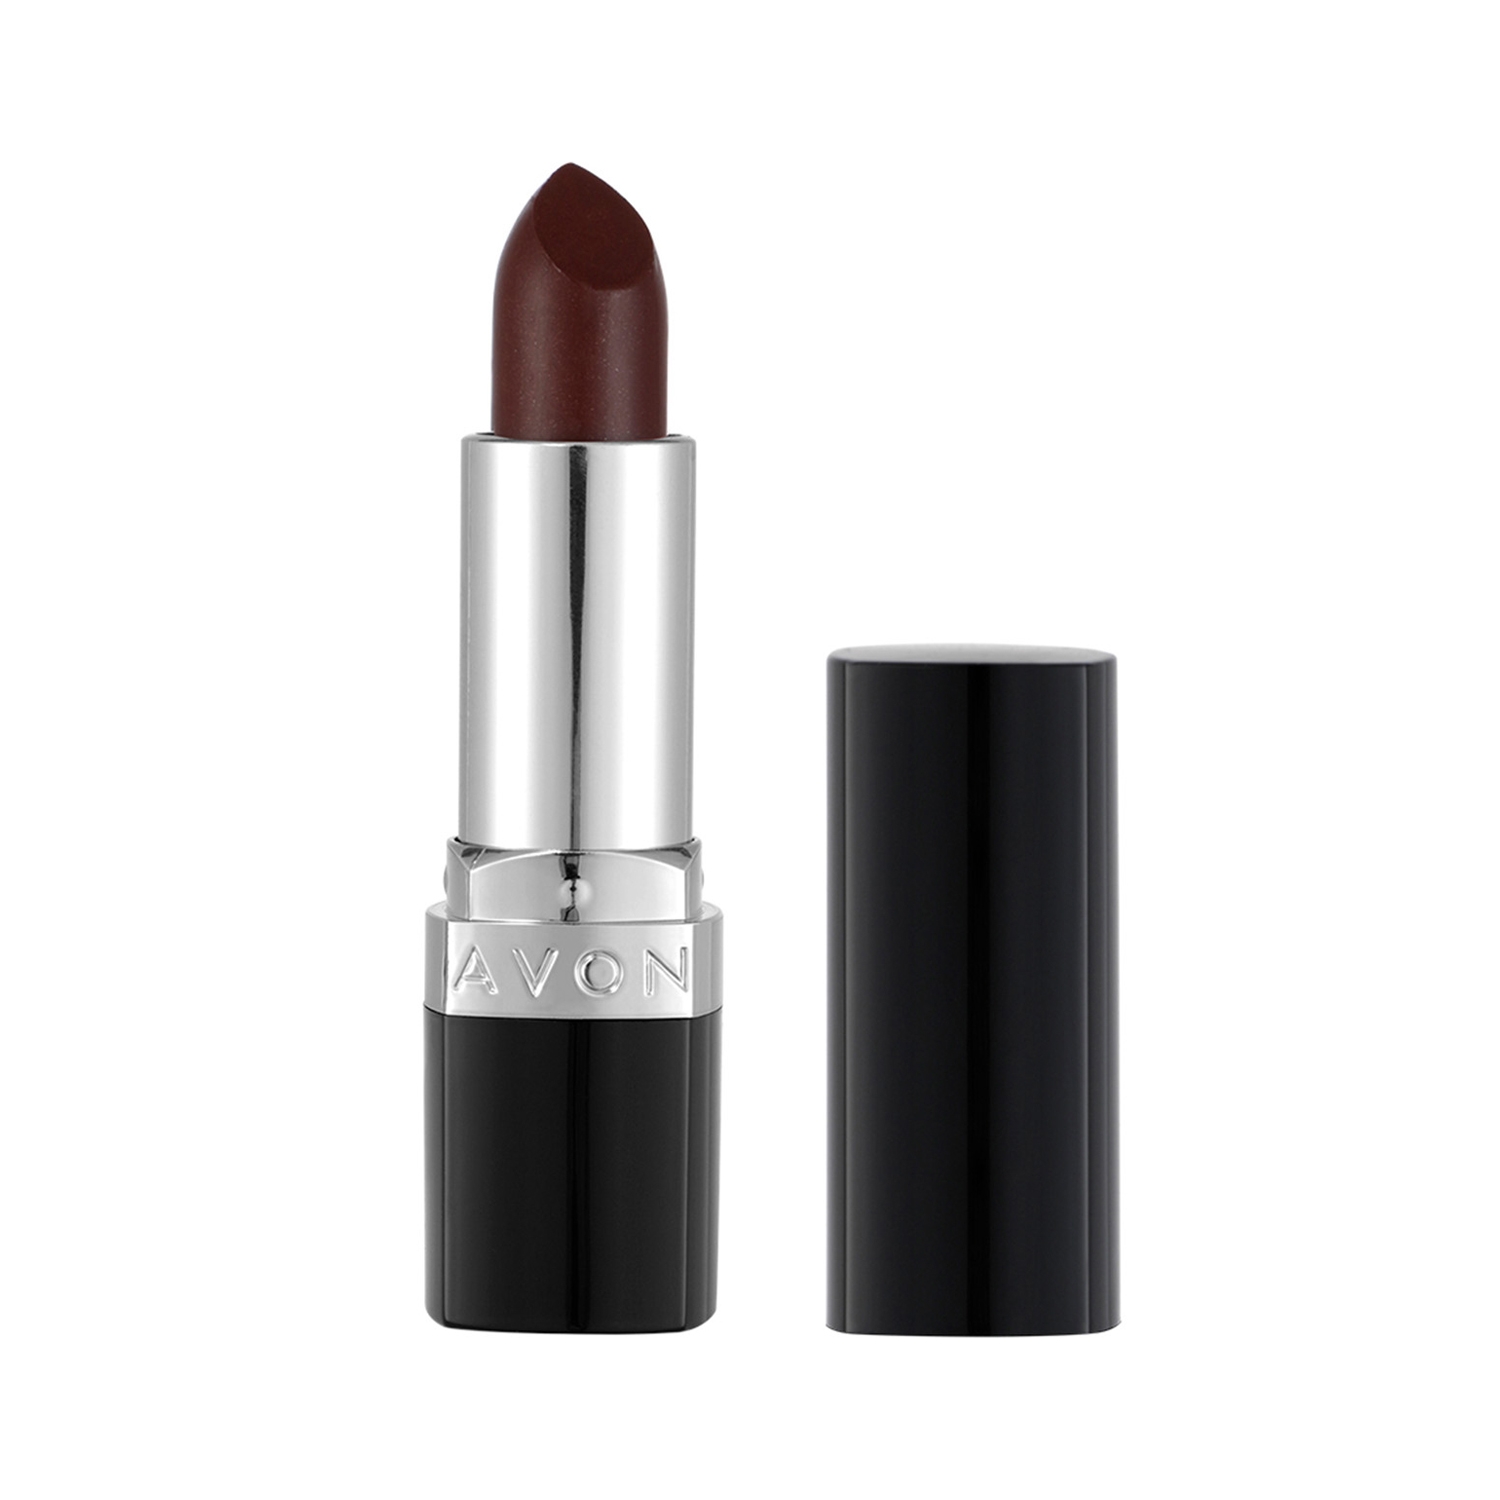 Avon | Avon True Color Lipstick SPF 15 - Deluxe Chocolate (3.8g)